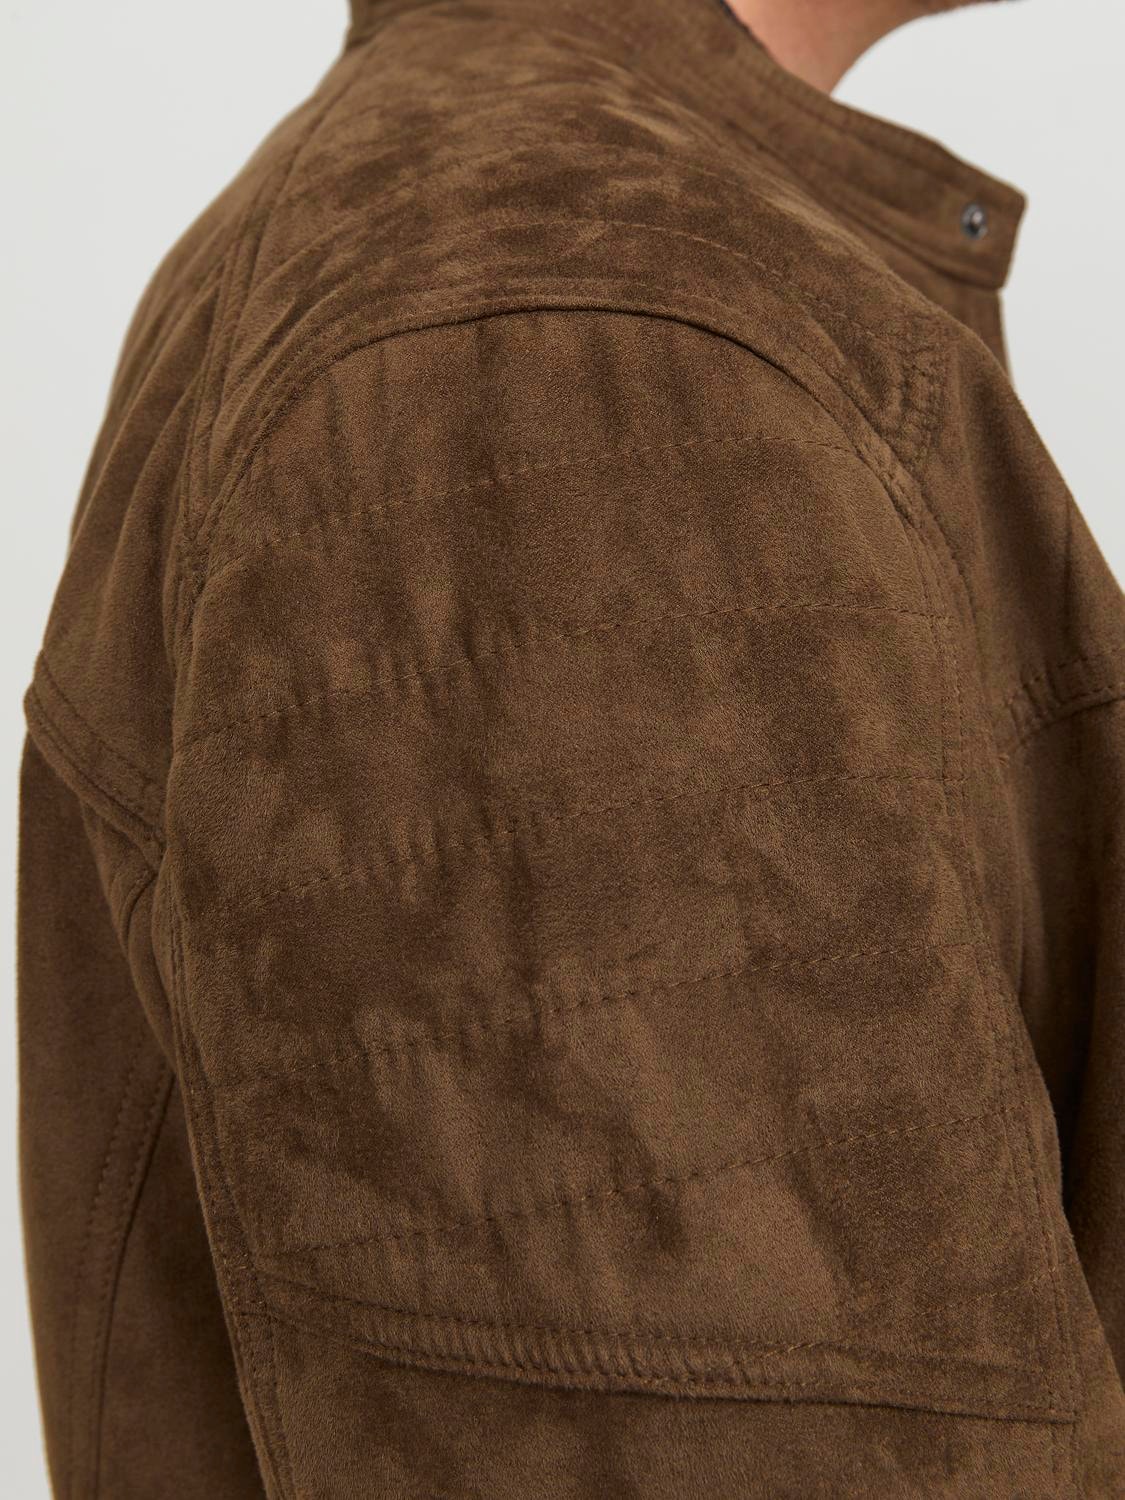 Jack & Jones Plus Size Faux leather jacket -Cognac - 12172908